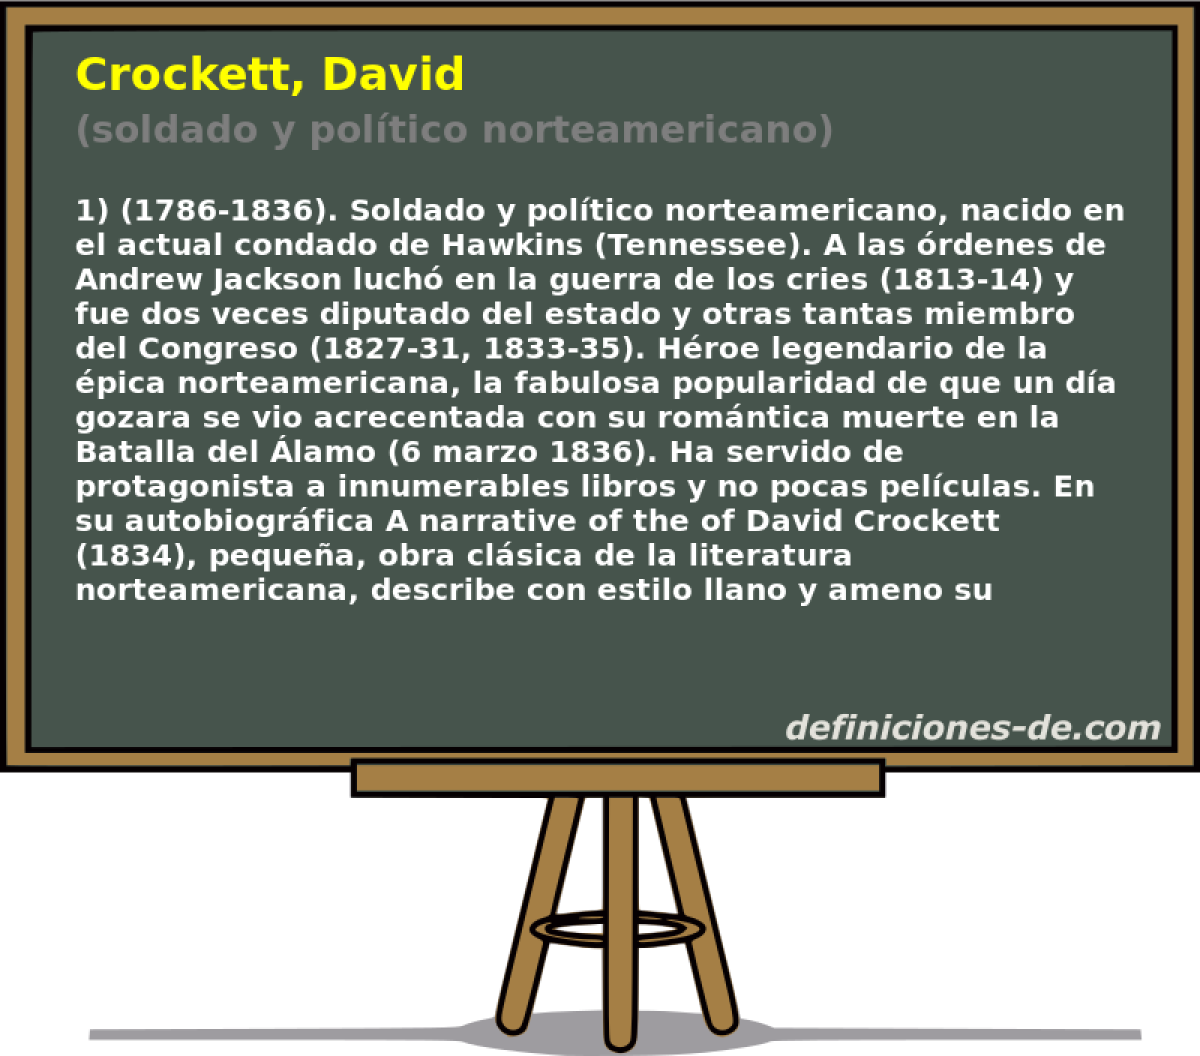 Crockett, David (soldado y poltico norteamericano)